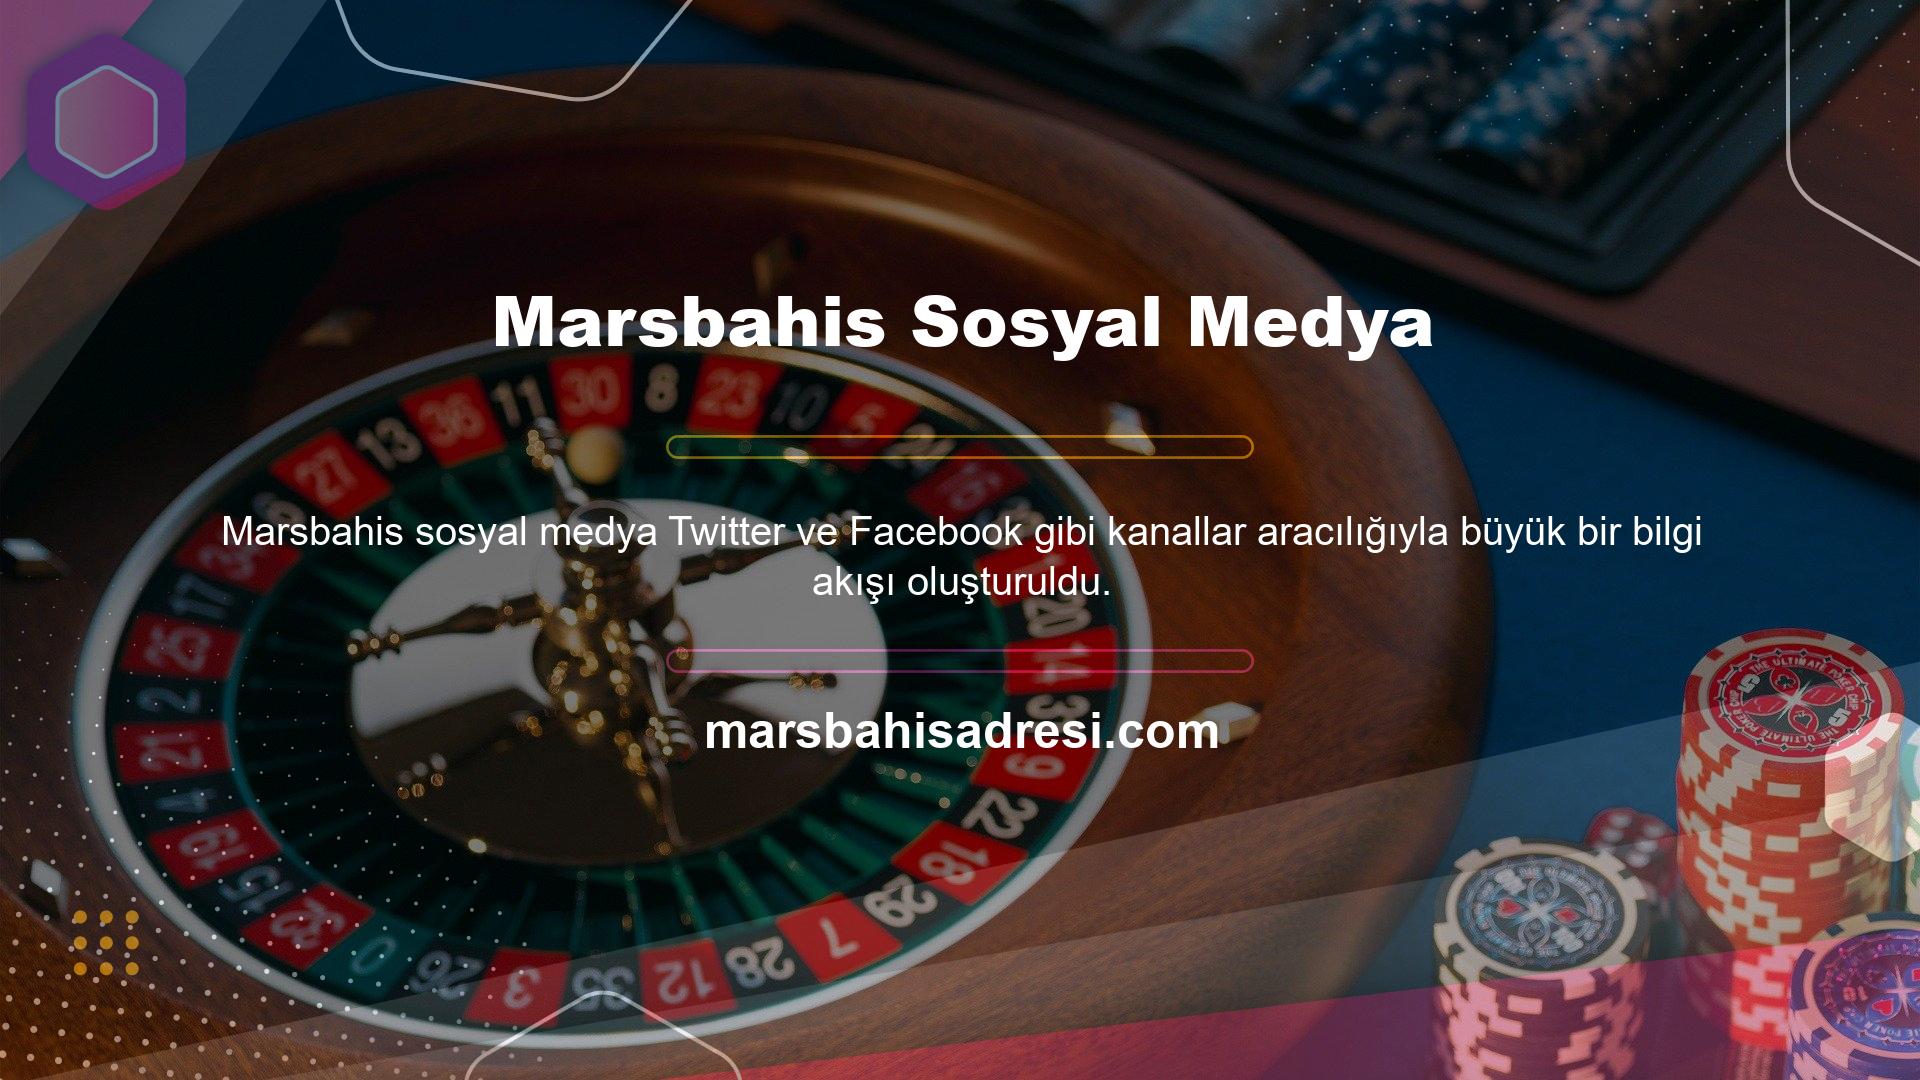 Bu Marsbahis sosyal medya sitede oluşturulan her kanala erişim, daha etkili bahis için güncellenir